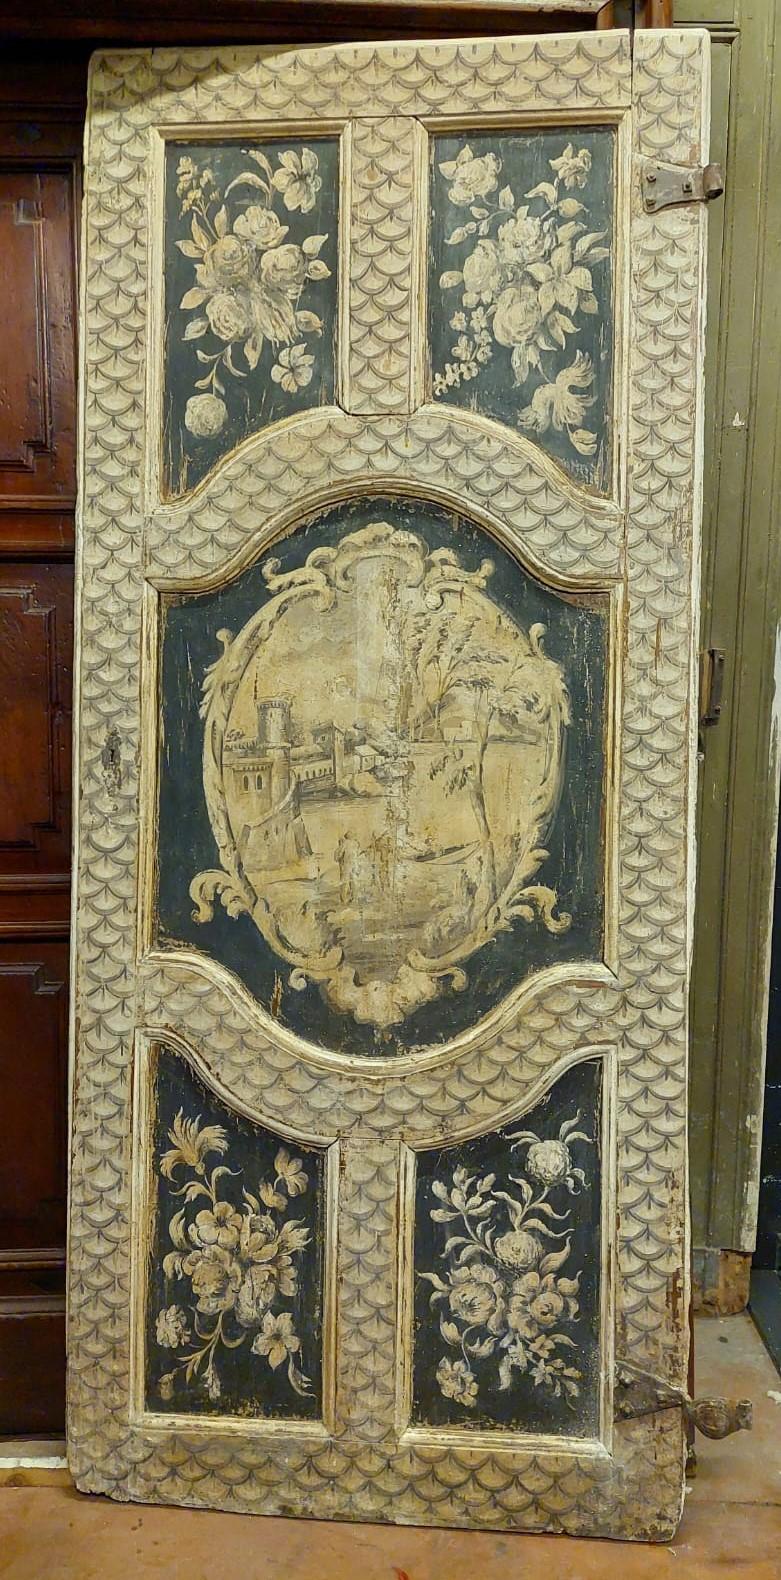 Ancienne porte laquée et peinte, avec des panneaux sculptés de motifs typiques du XVIIIe siècle, construite à la main et peinte par un artisan de l'époque, pour un palais noble à Florence (Italie).
Il a encore les fers d'origine, laqués et peints